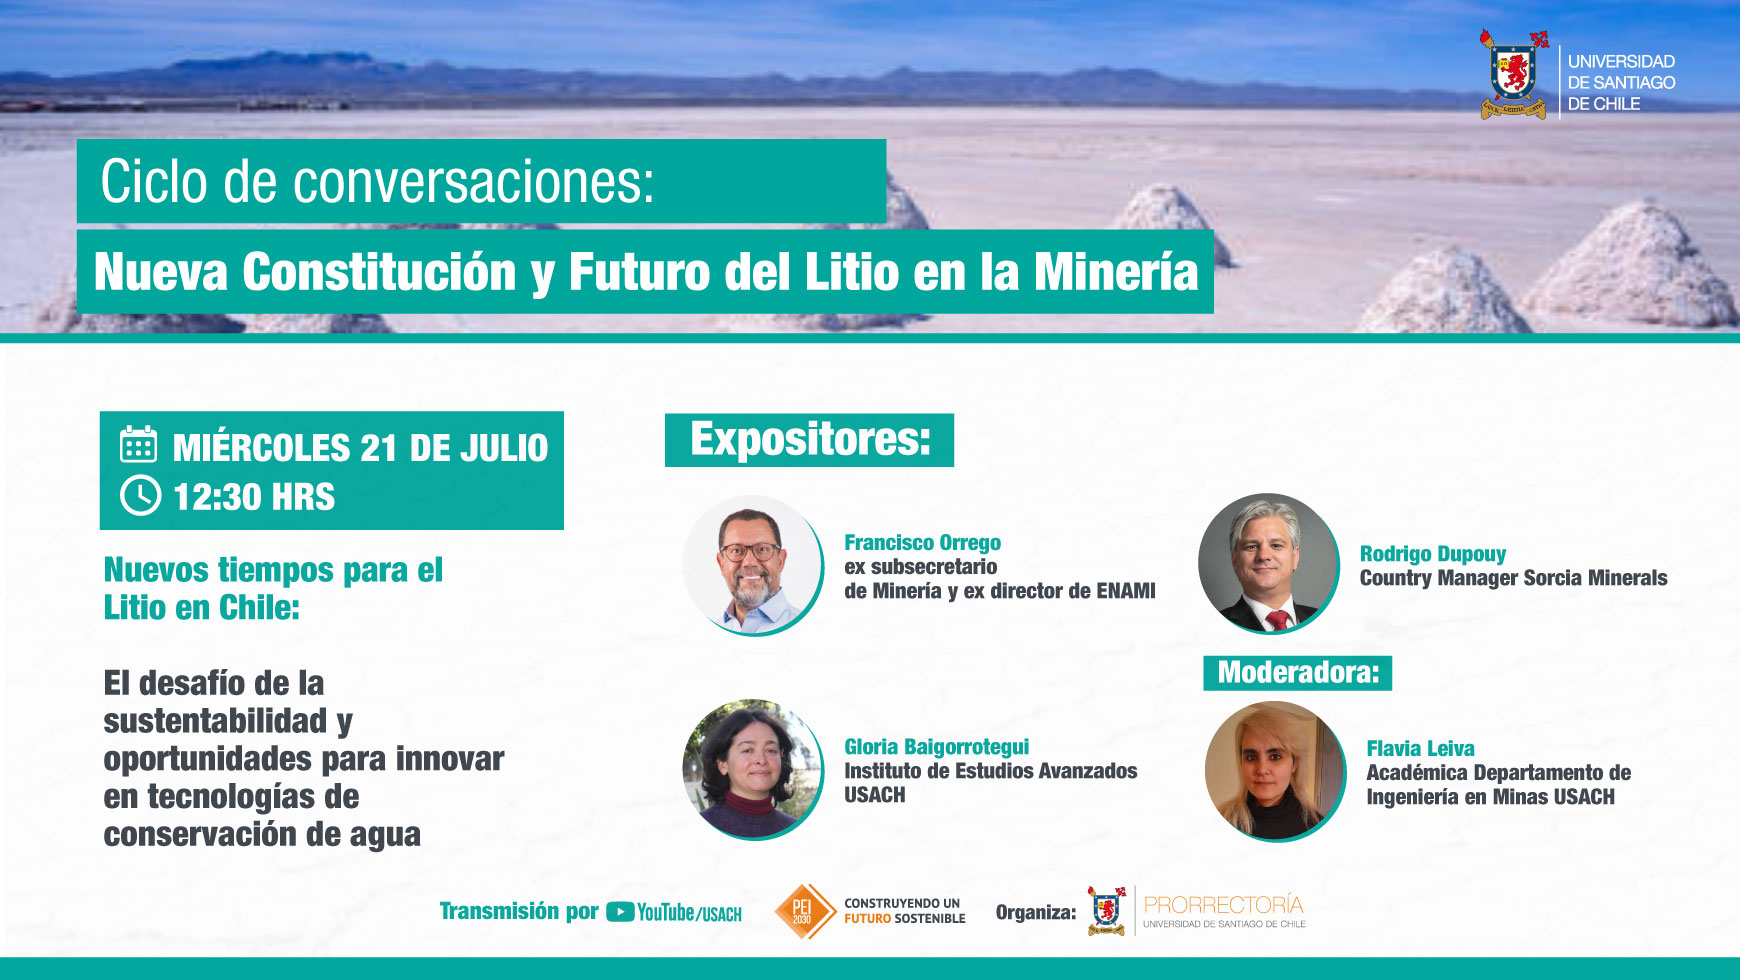 Universidad de Santiago inaugura el ciclo de conversaciones “Nueva Constitución y Futuro del Litio en la Minería”